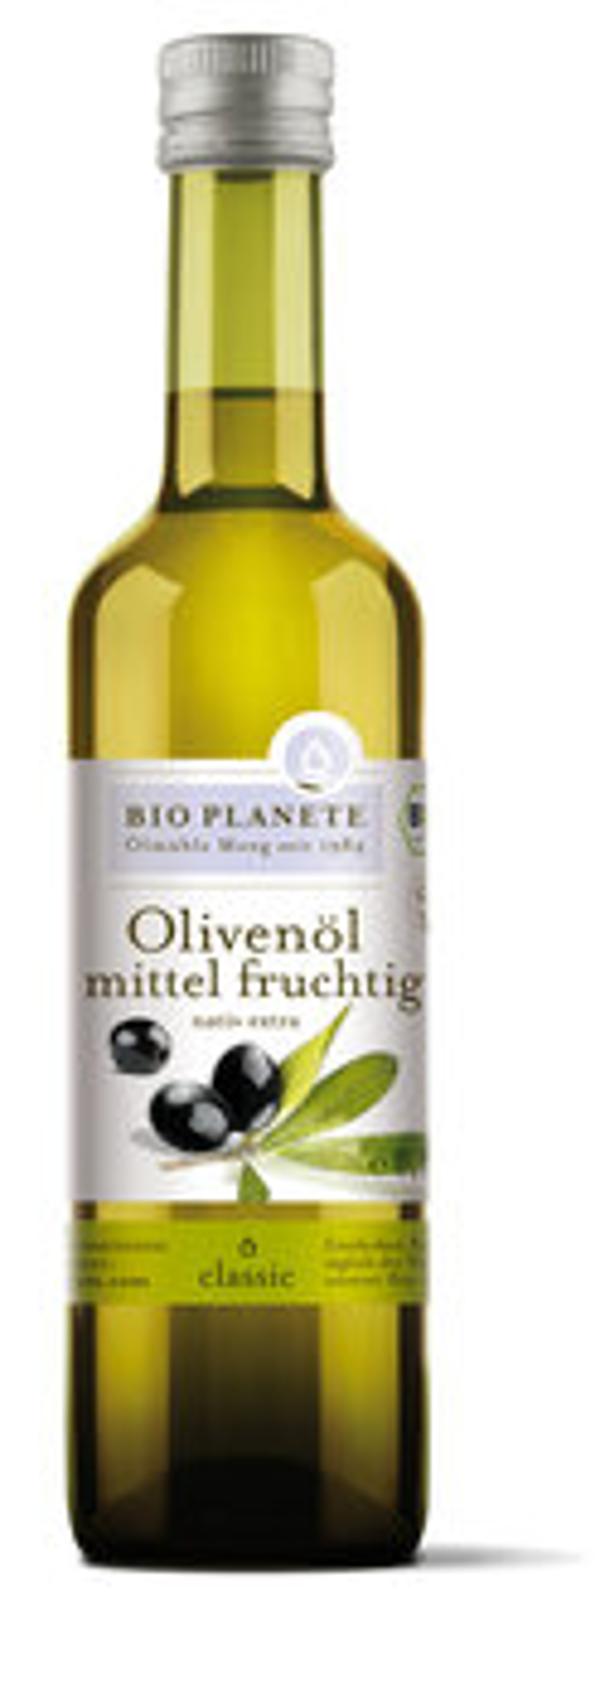 Produktfoto zu Olivenöl mittel fruchtig 500ml